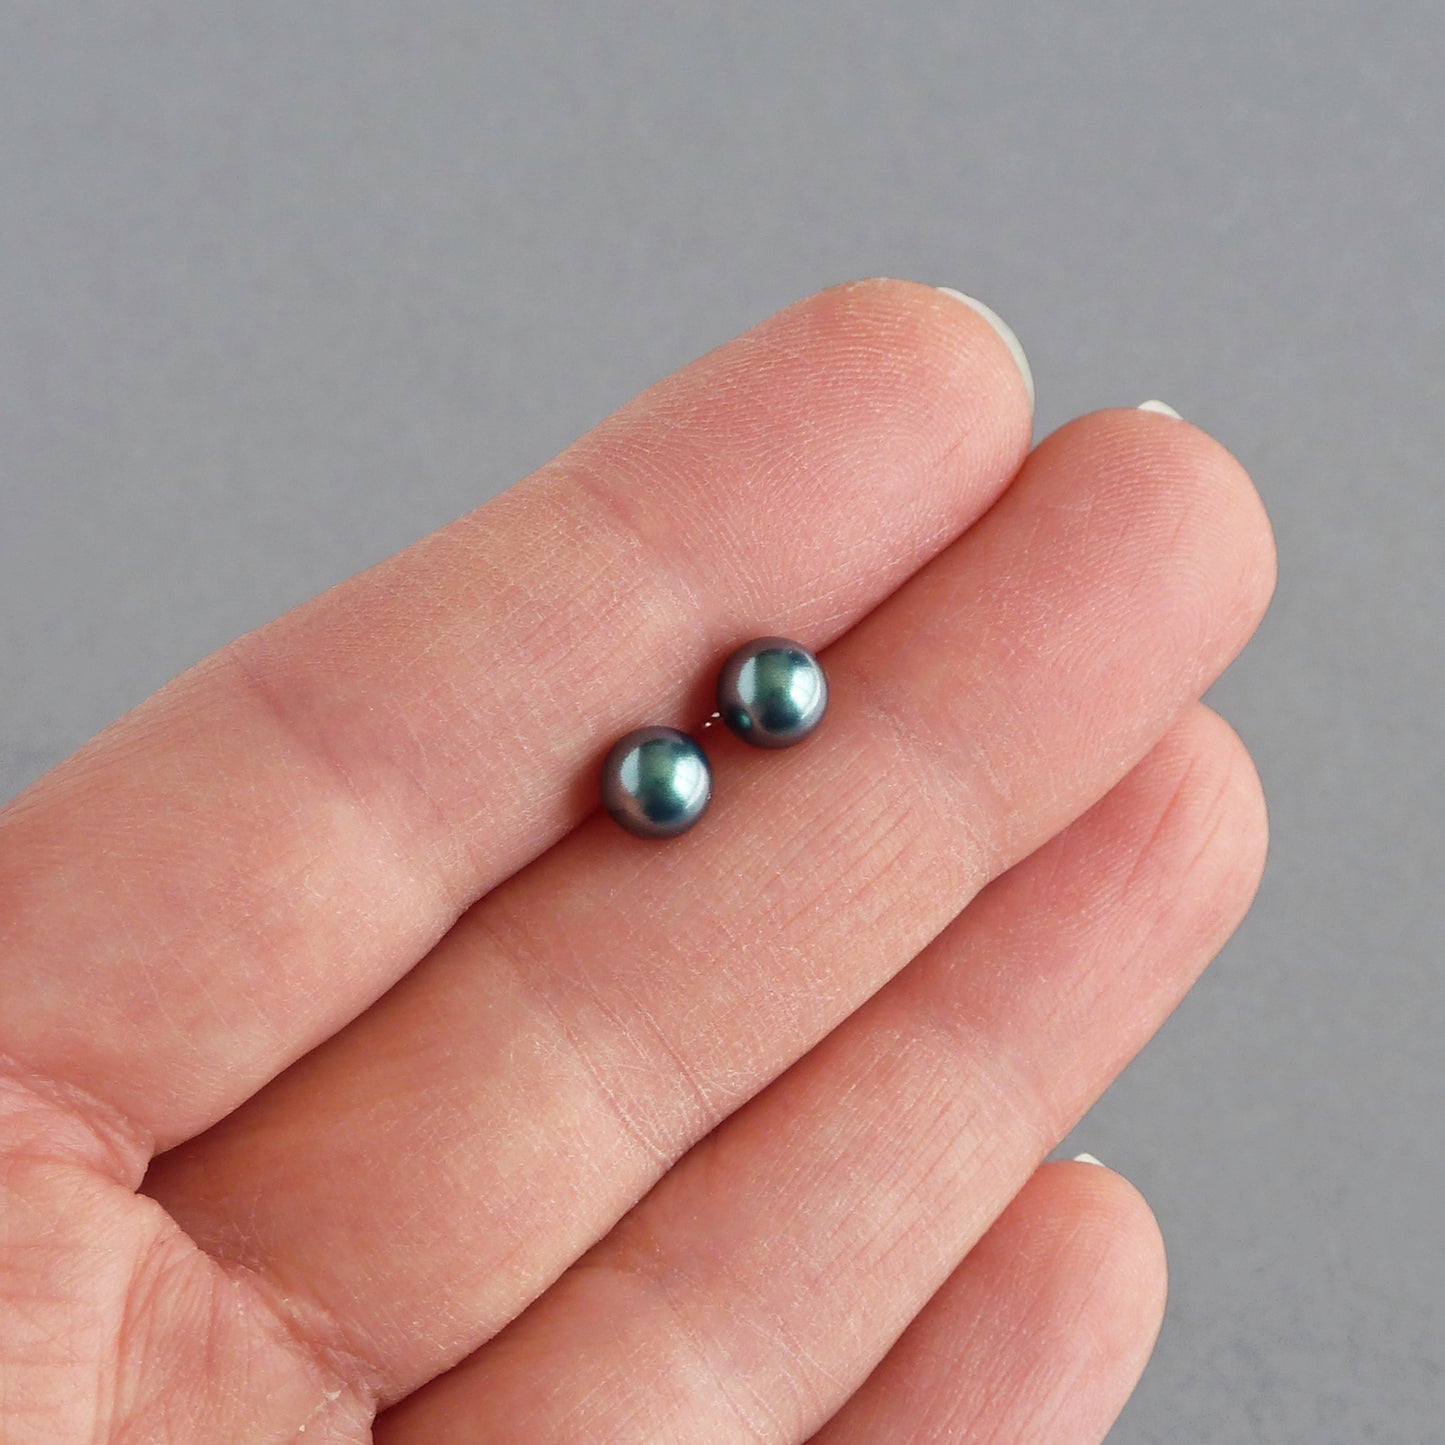 6mm dark green pearl stud earrings